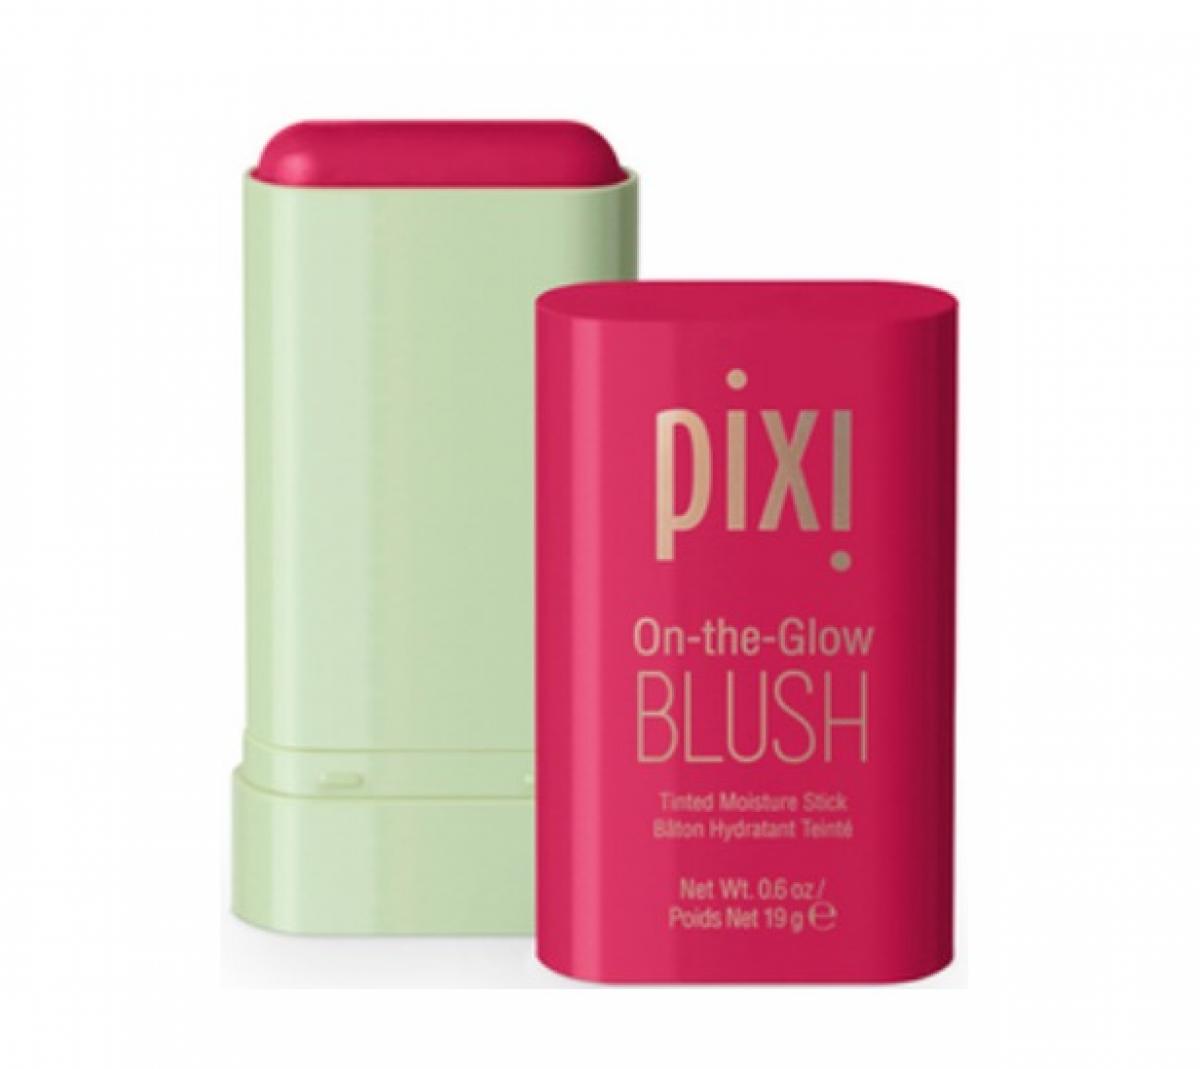 On-the-Glow Blush - Pixi 